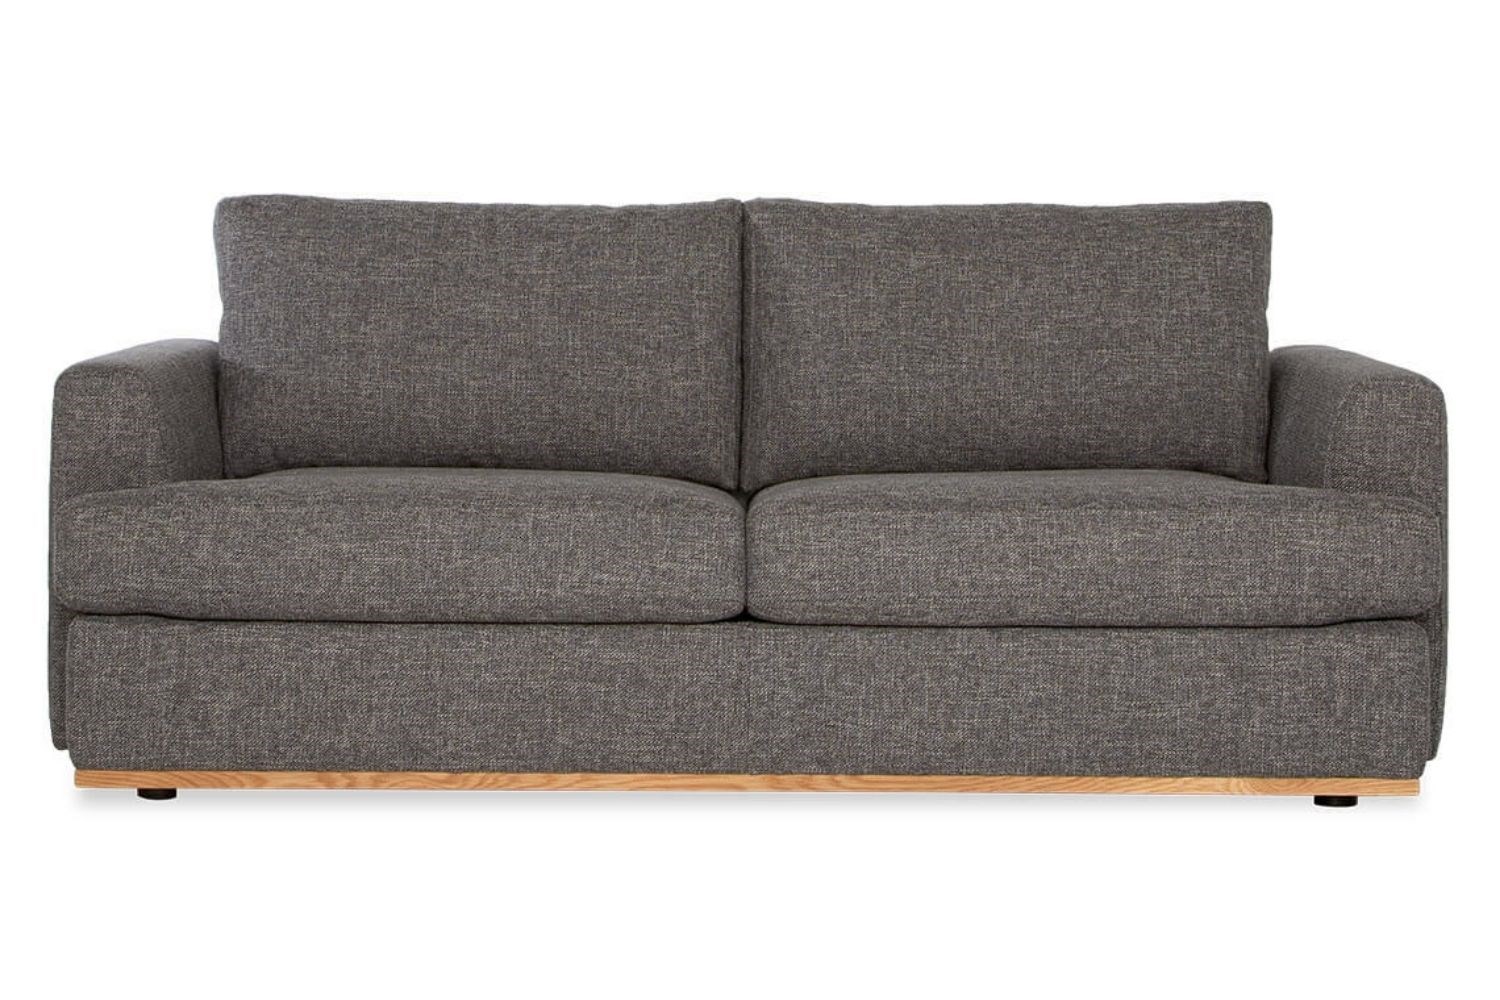 single sofa bed australia